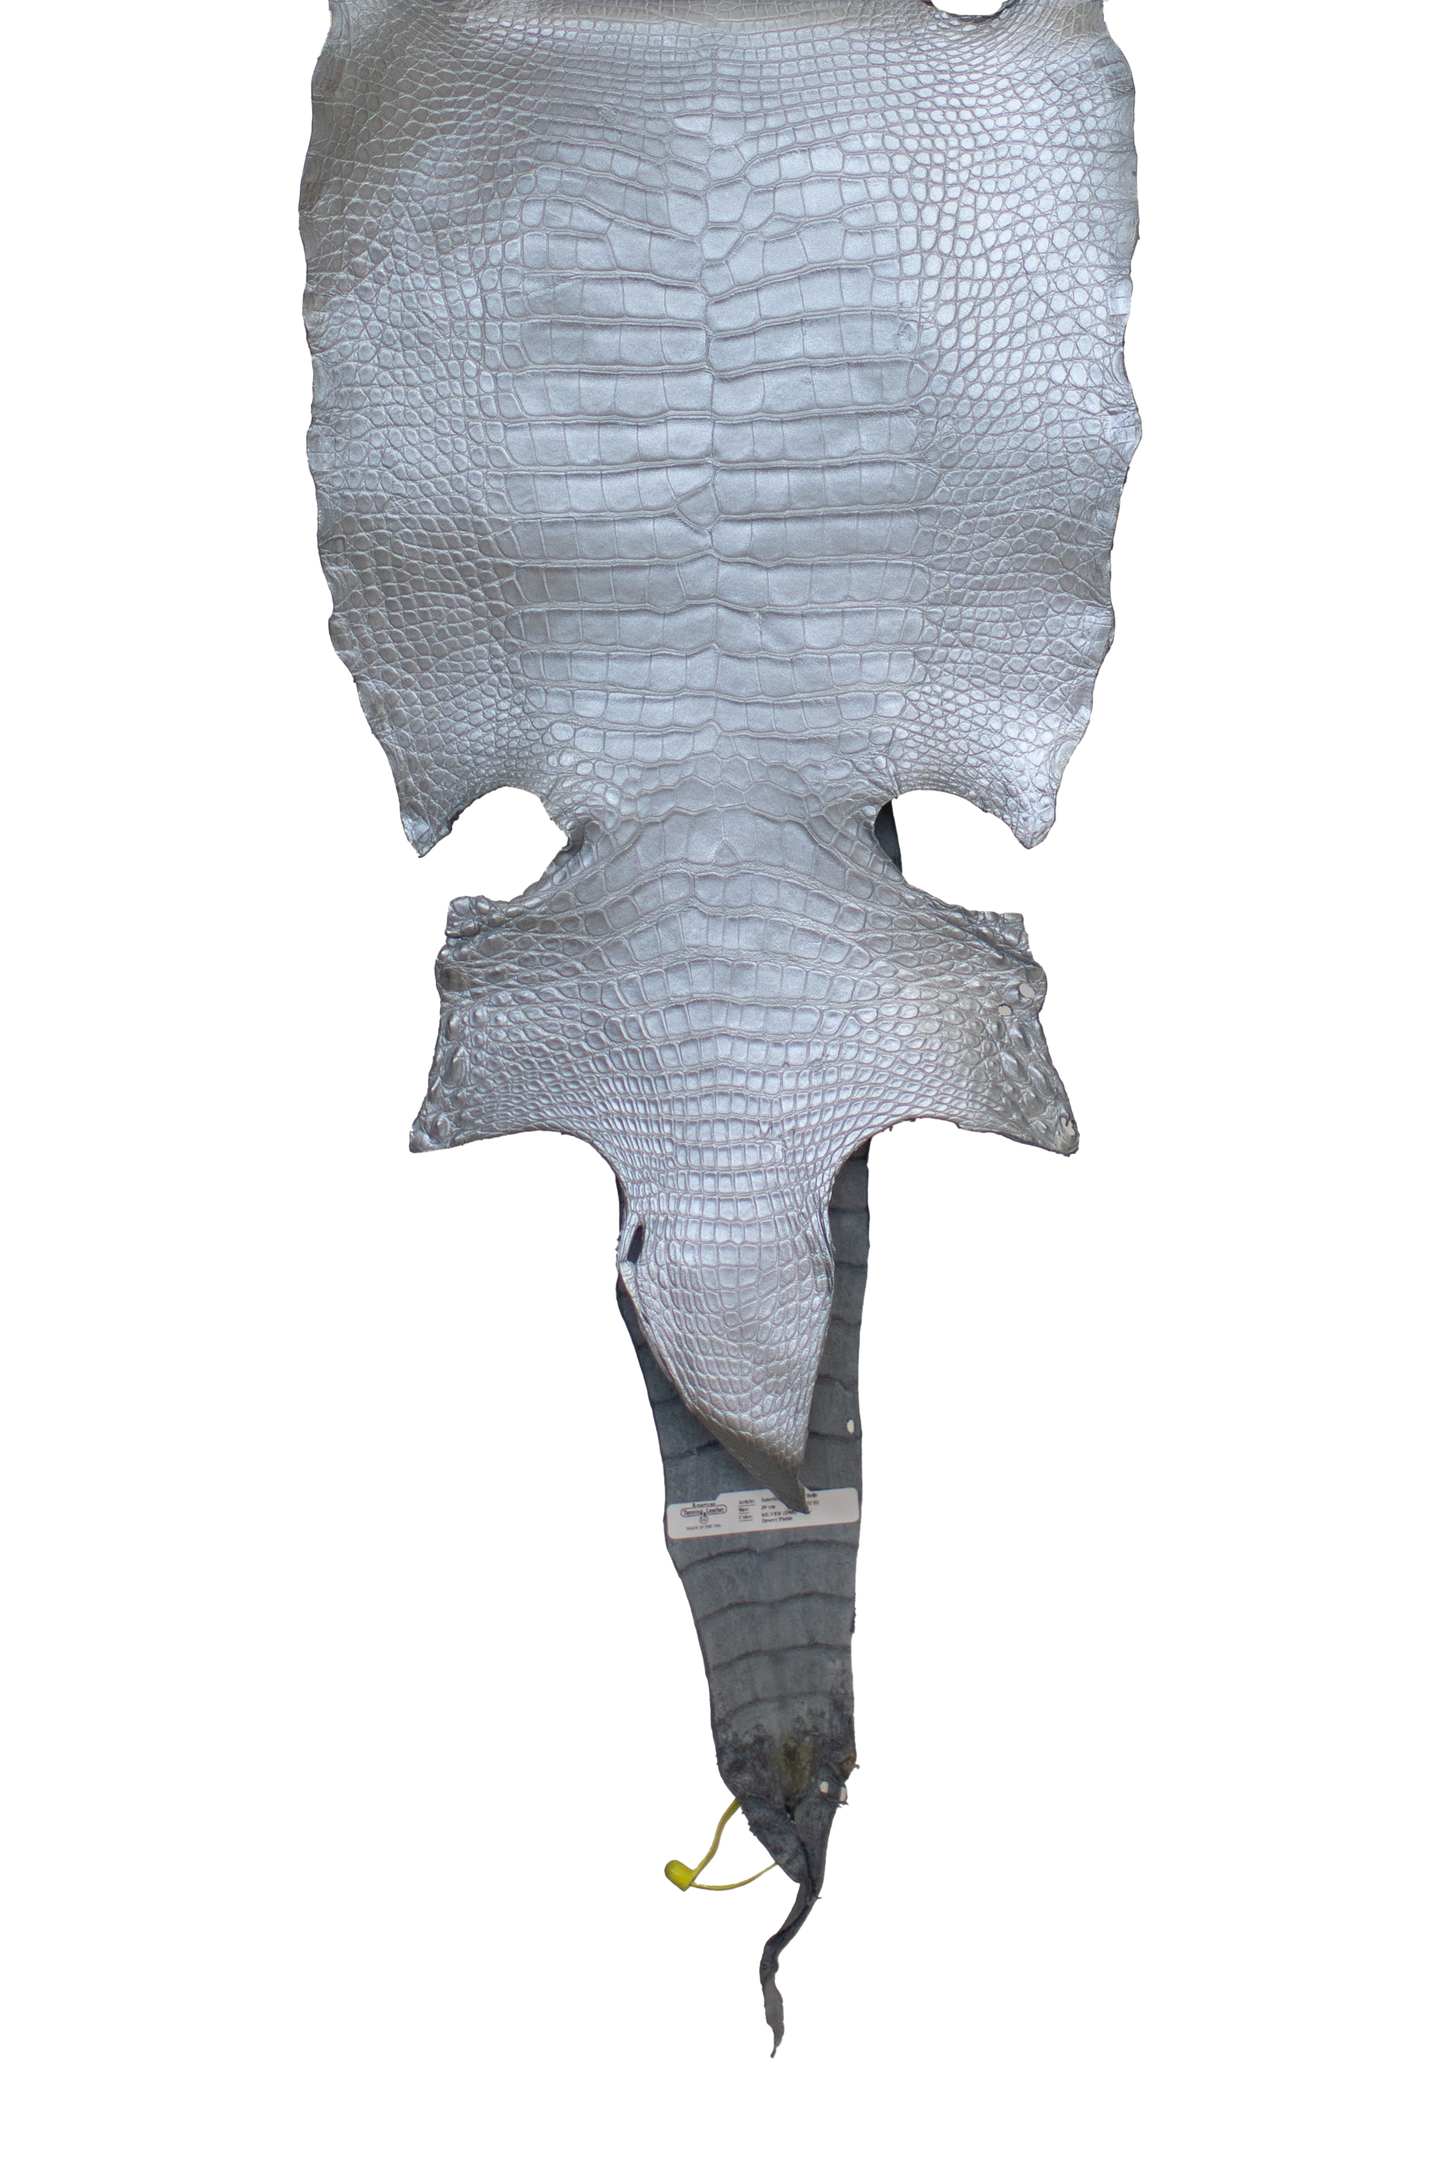 39 cm Grade 2/3 Metallic Silver Matte Wild American Alligator Leather - Tag: LA19-0011299